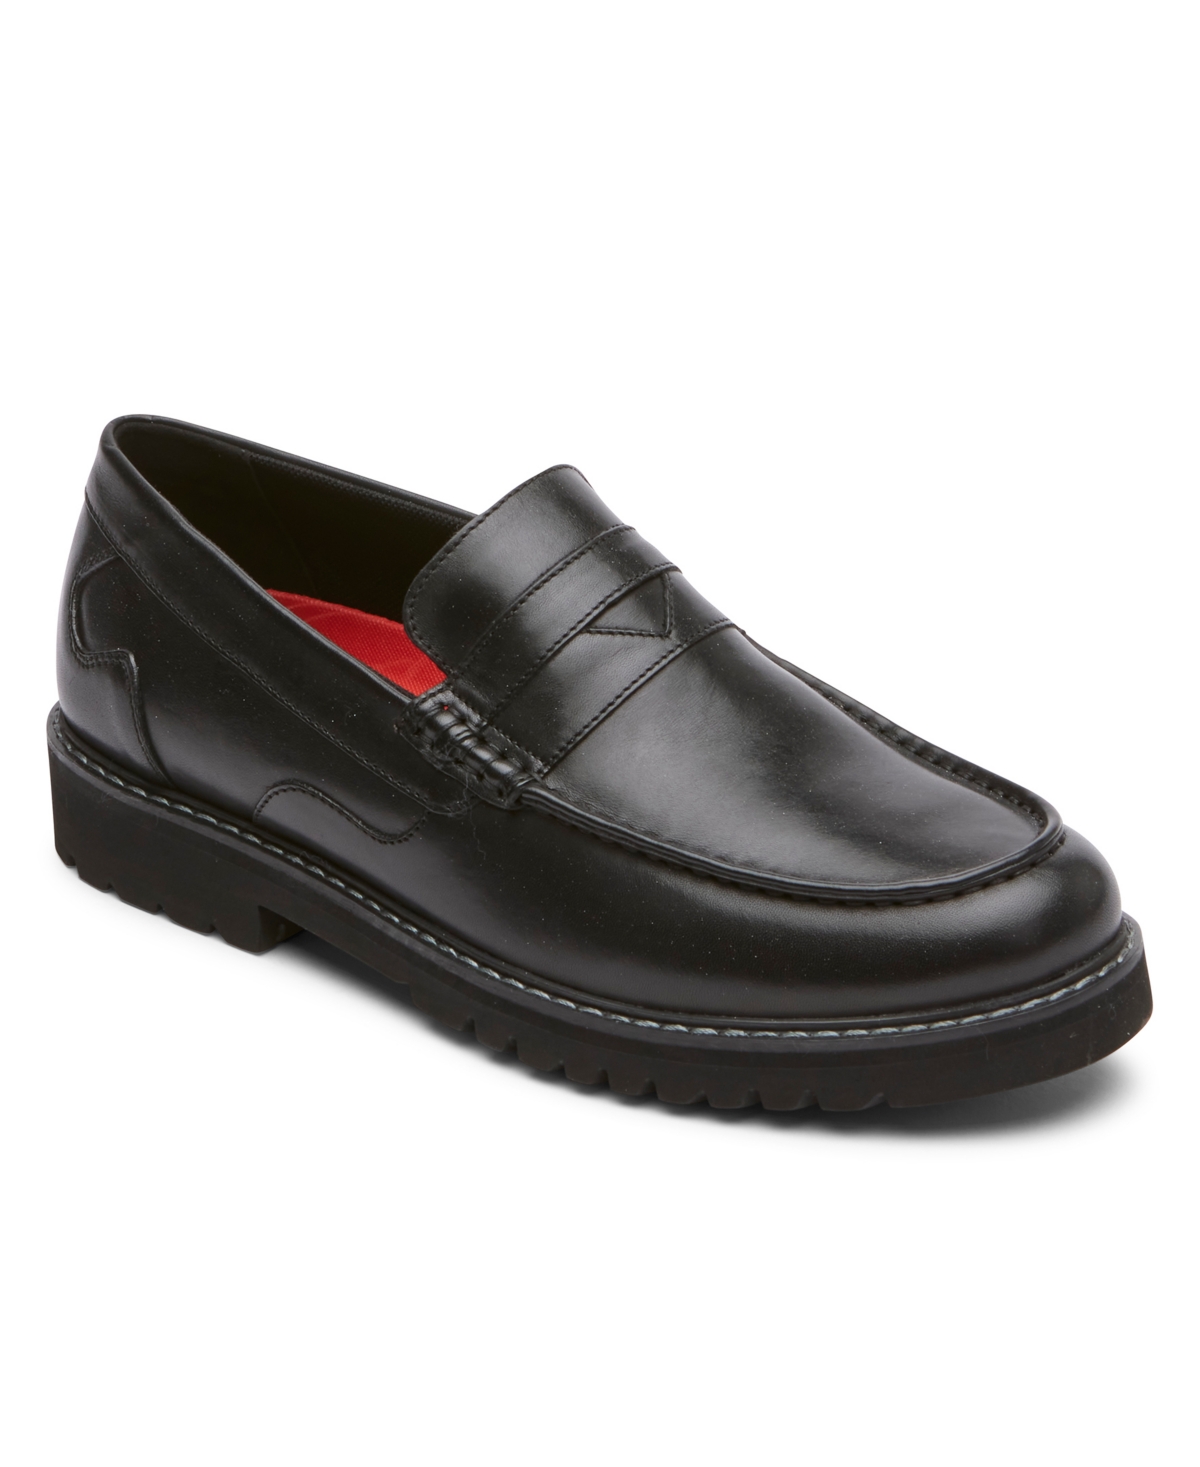 Men's Maverick Penny Loafer Shoes - Black